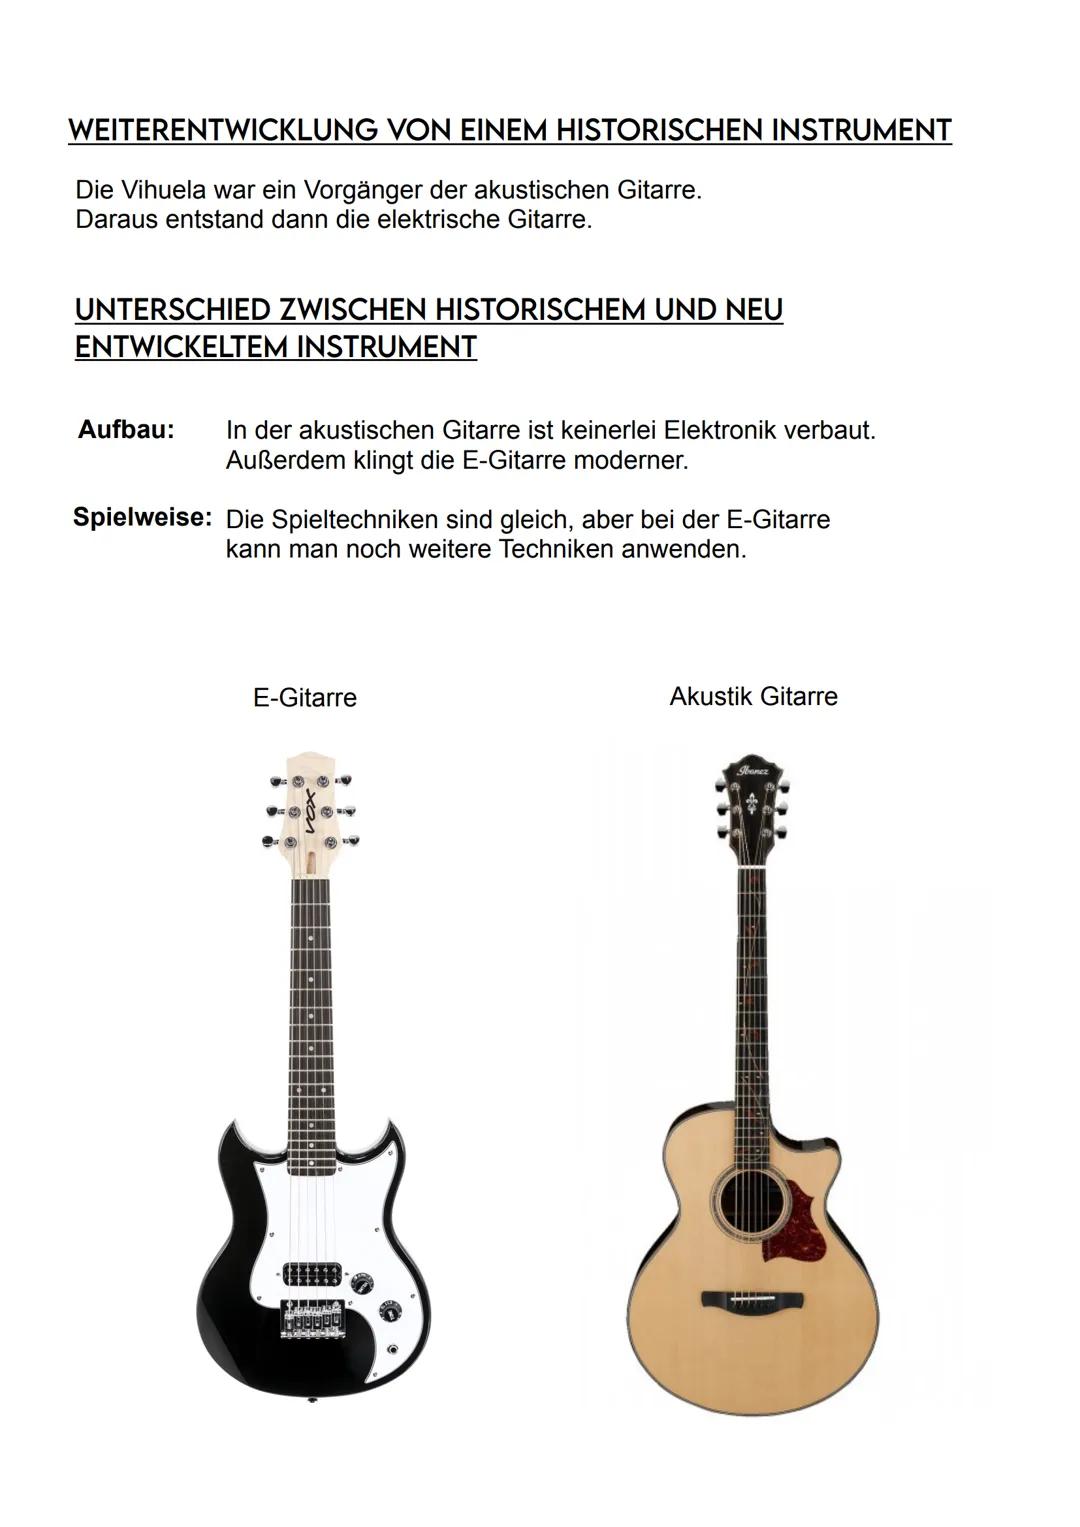 E-Gitarre
BAUWEISE DES INSTRUMENTS
Stimmmechaniken-
Sattel
Hals/Griffbrett
Befestigungsknöpfe
für den Gitarrengurt
Tonabnehmer in
Halspositi